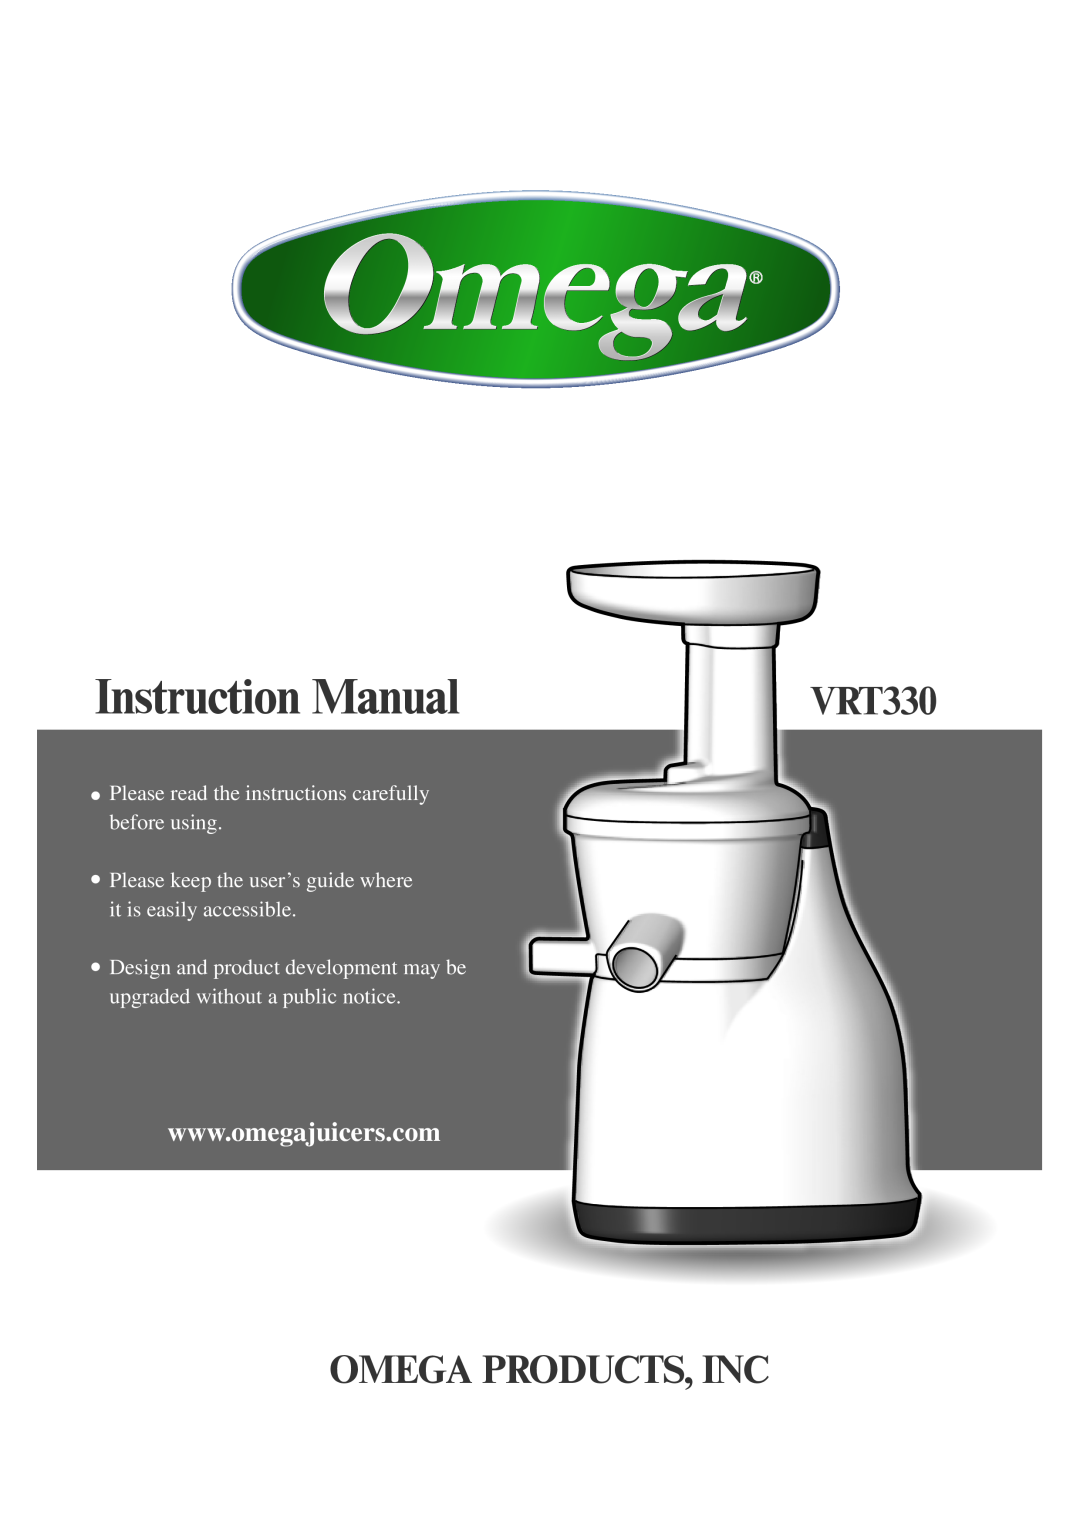 Omega VRT330 instruction manual Instruction Manual, Omega Products, Inc 